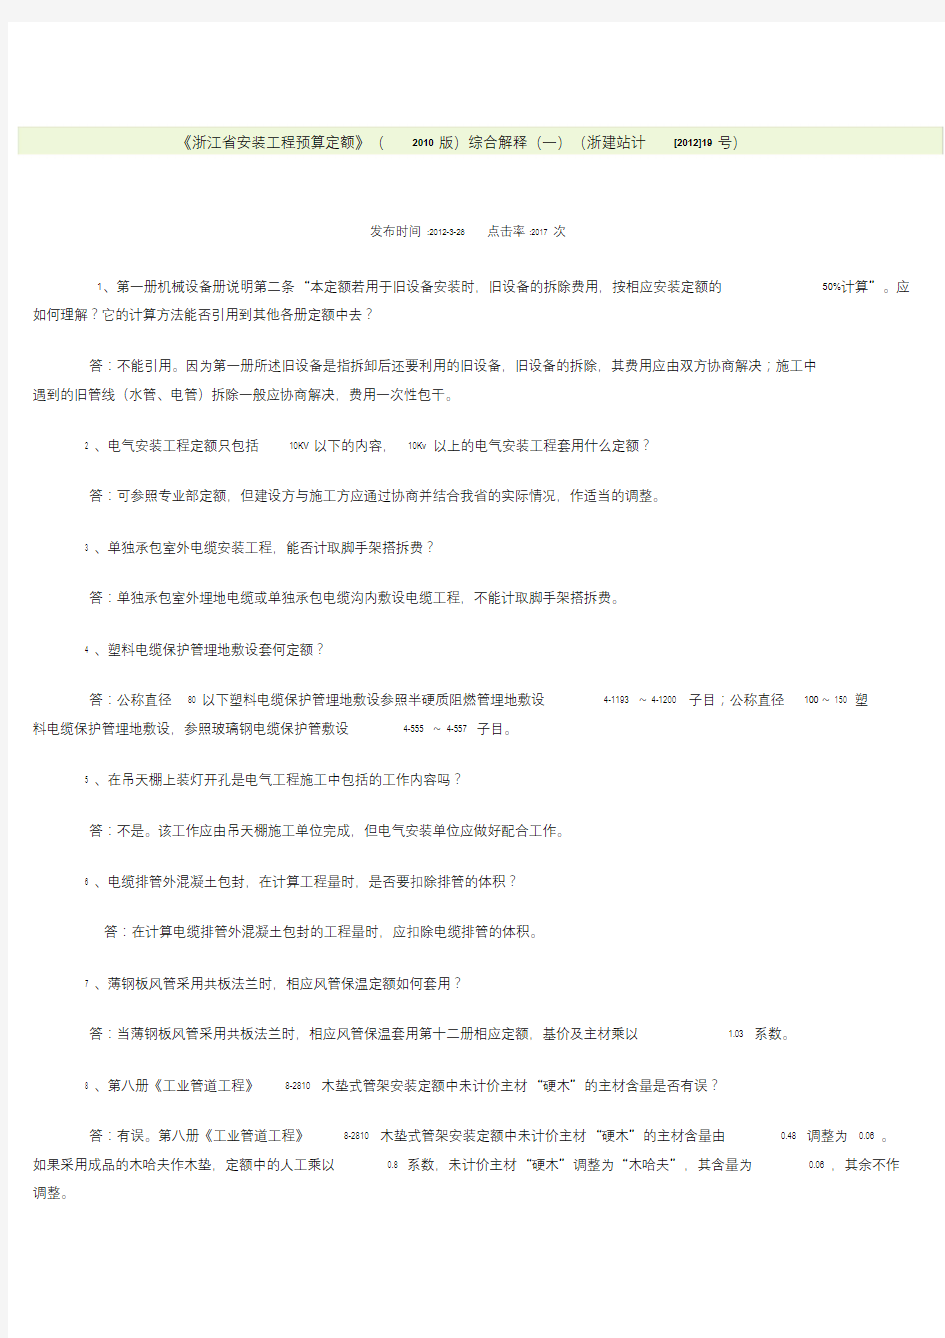 《浙江省安装工程预算定额》(2010版)综合解释(一).doc